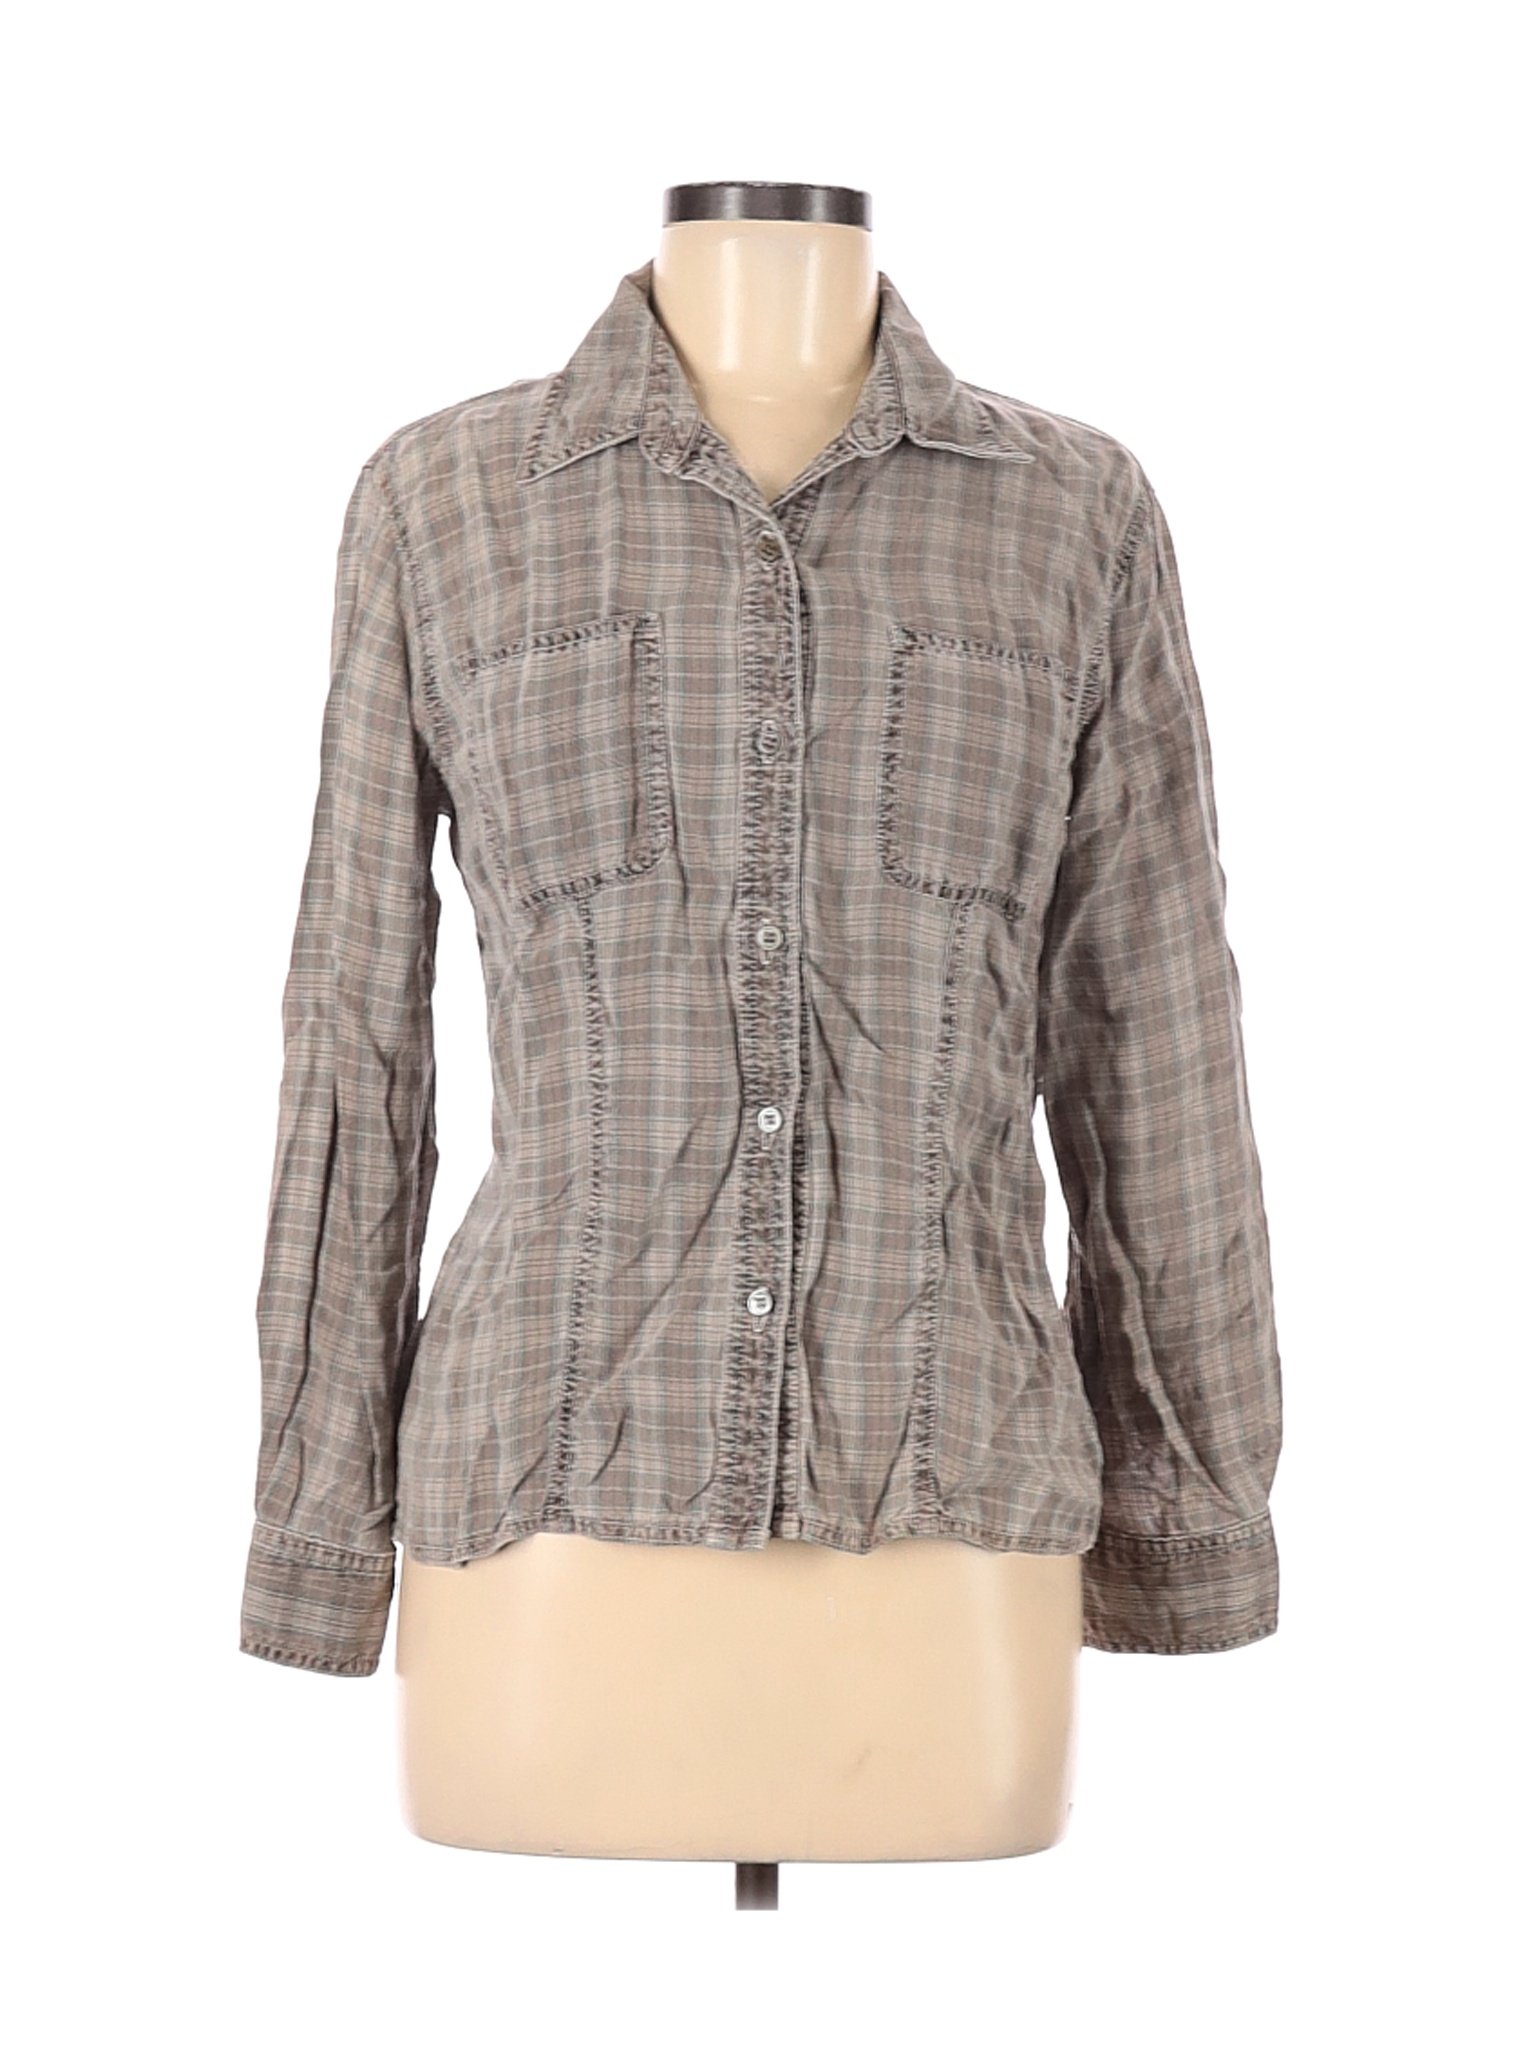 Assorted Brands Women Brown Long Sleeve Button-Down Shirt 6 | eBay